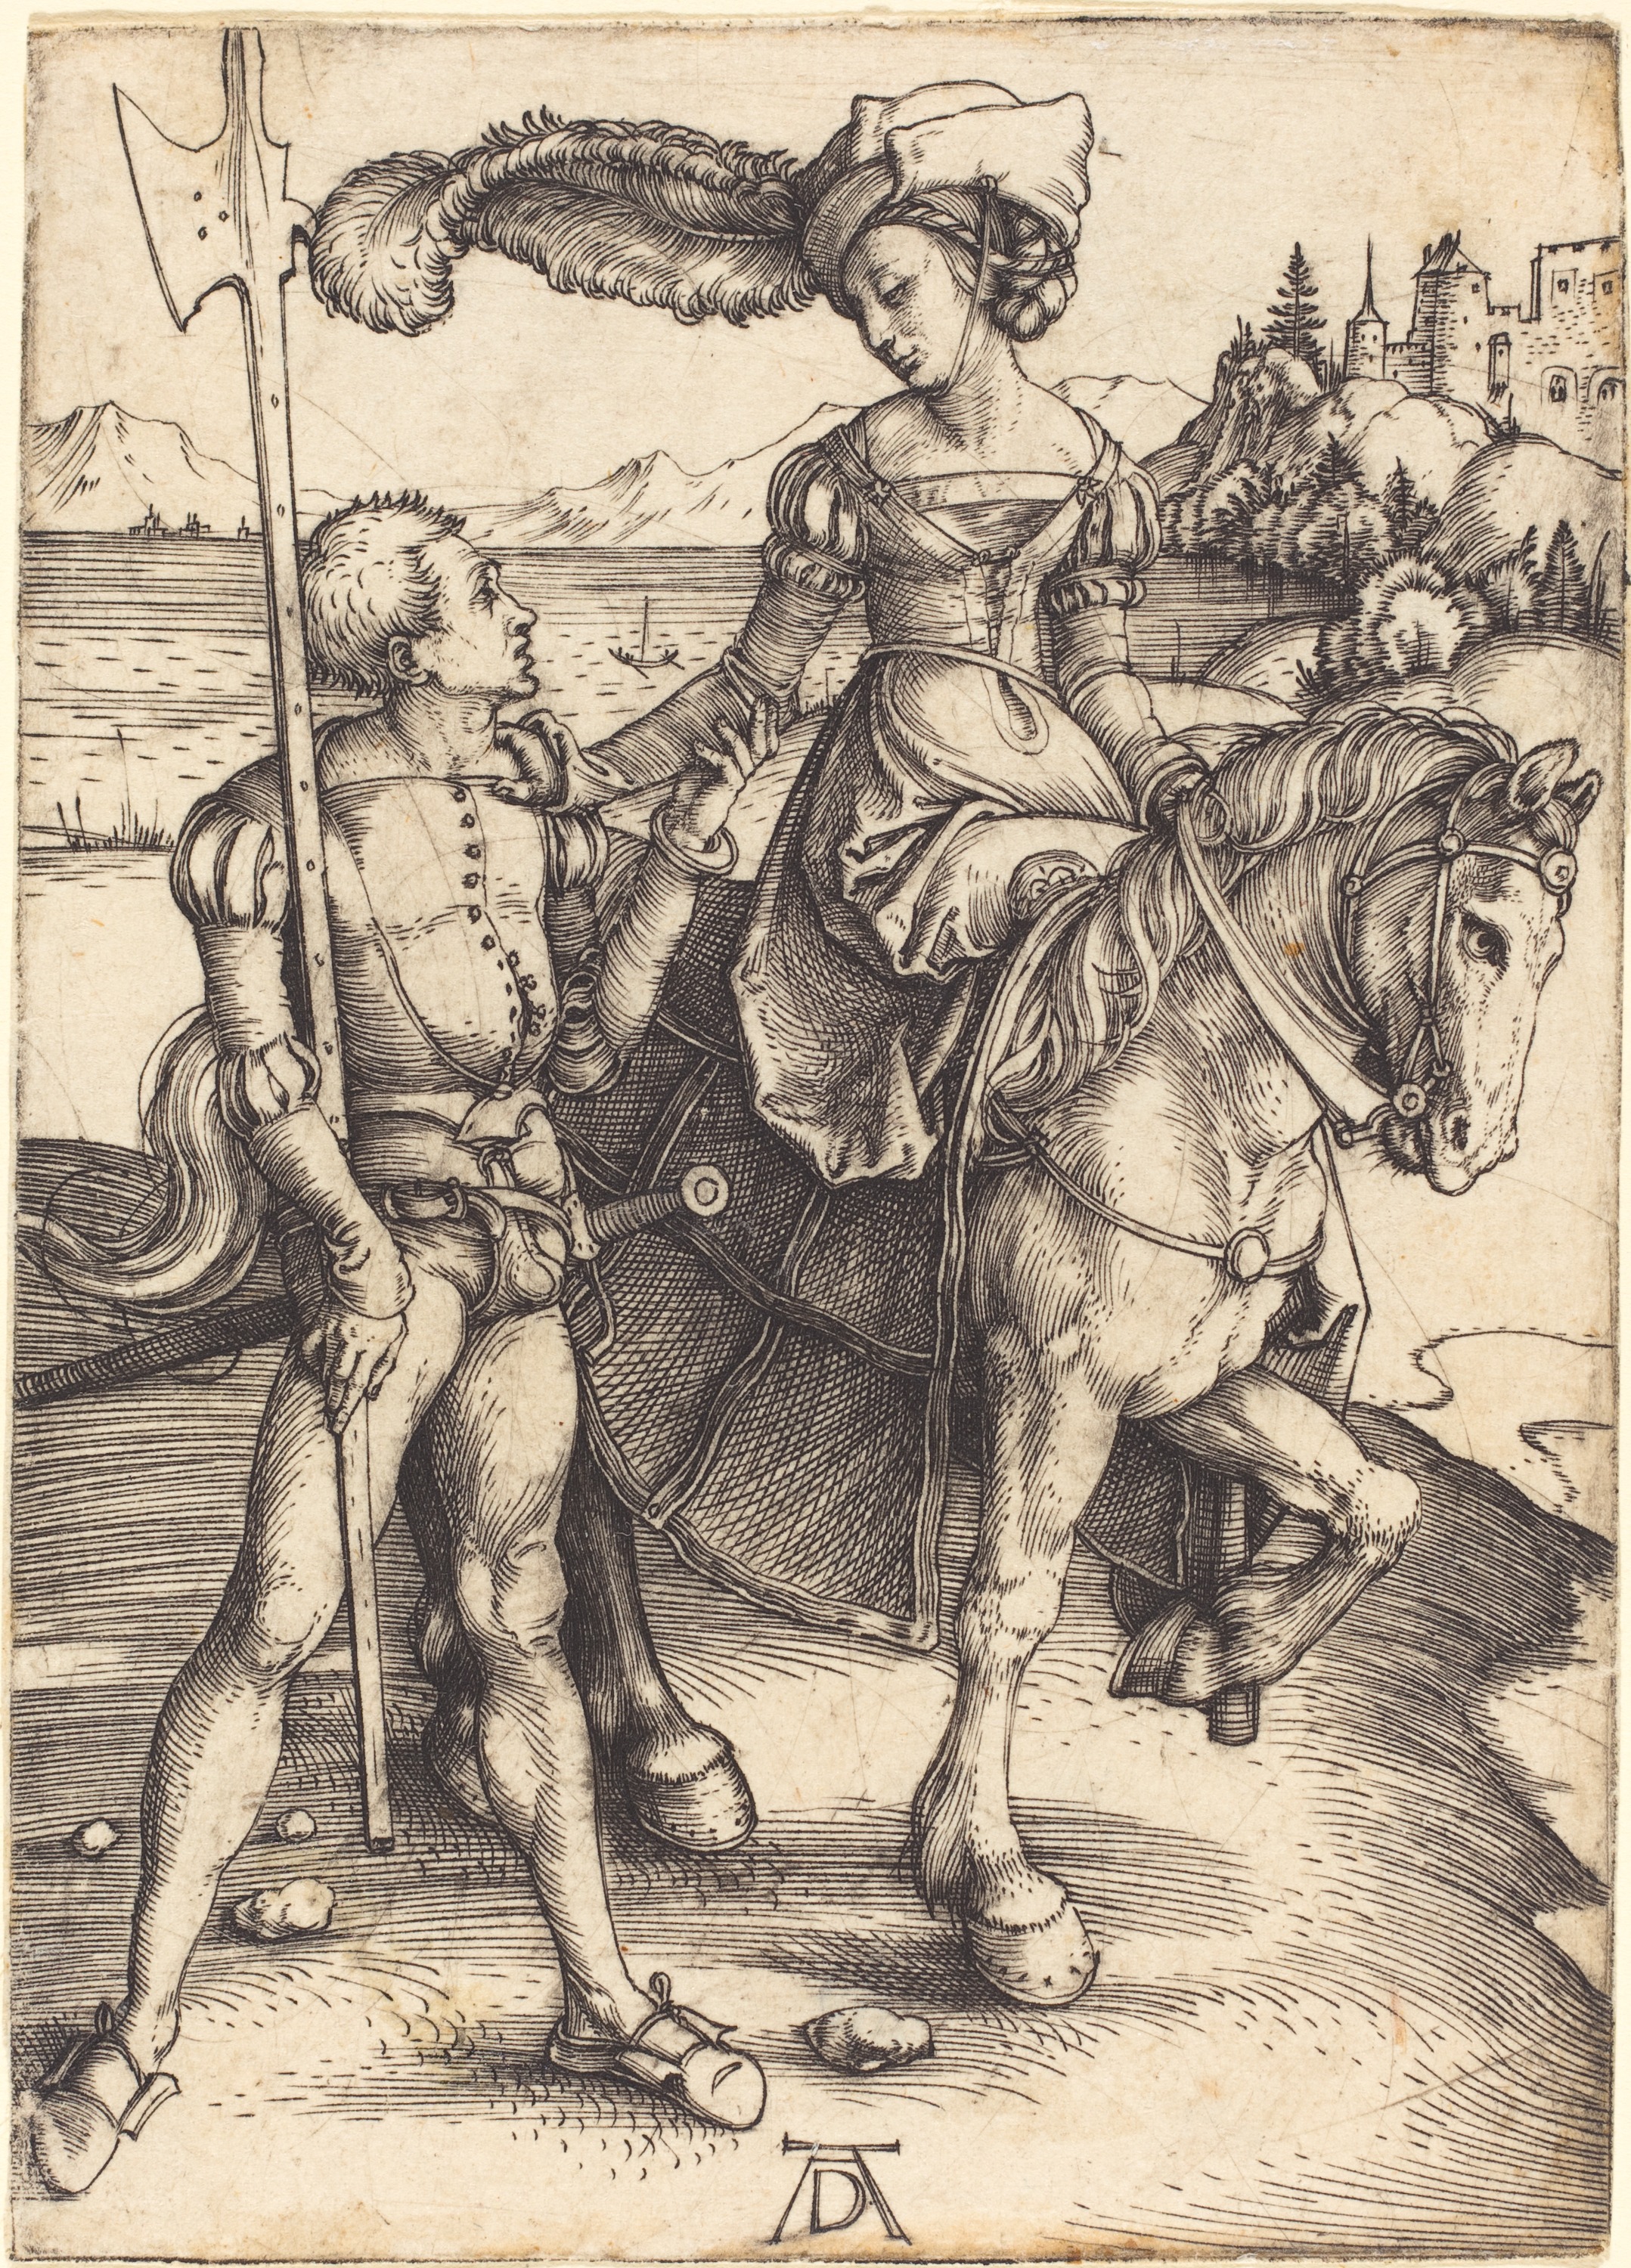 The Lady on Horseback and a Lansquenet by Albrecht Dürer - circa 1497 - 109 by 78mm Metropolitan Museum of Art